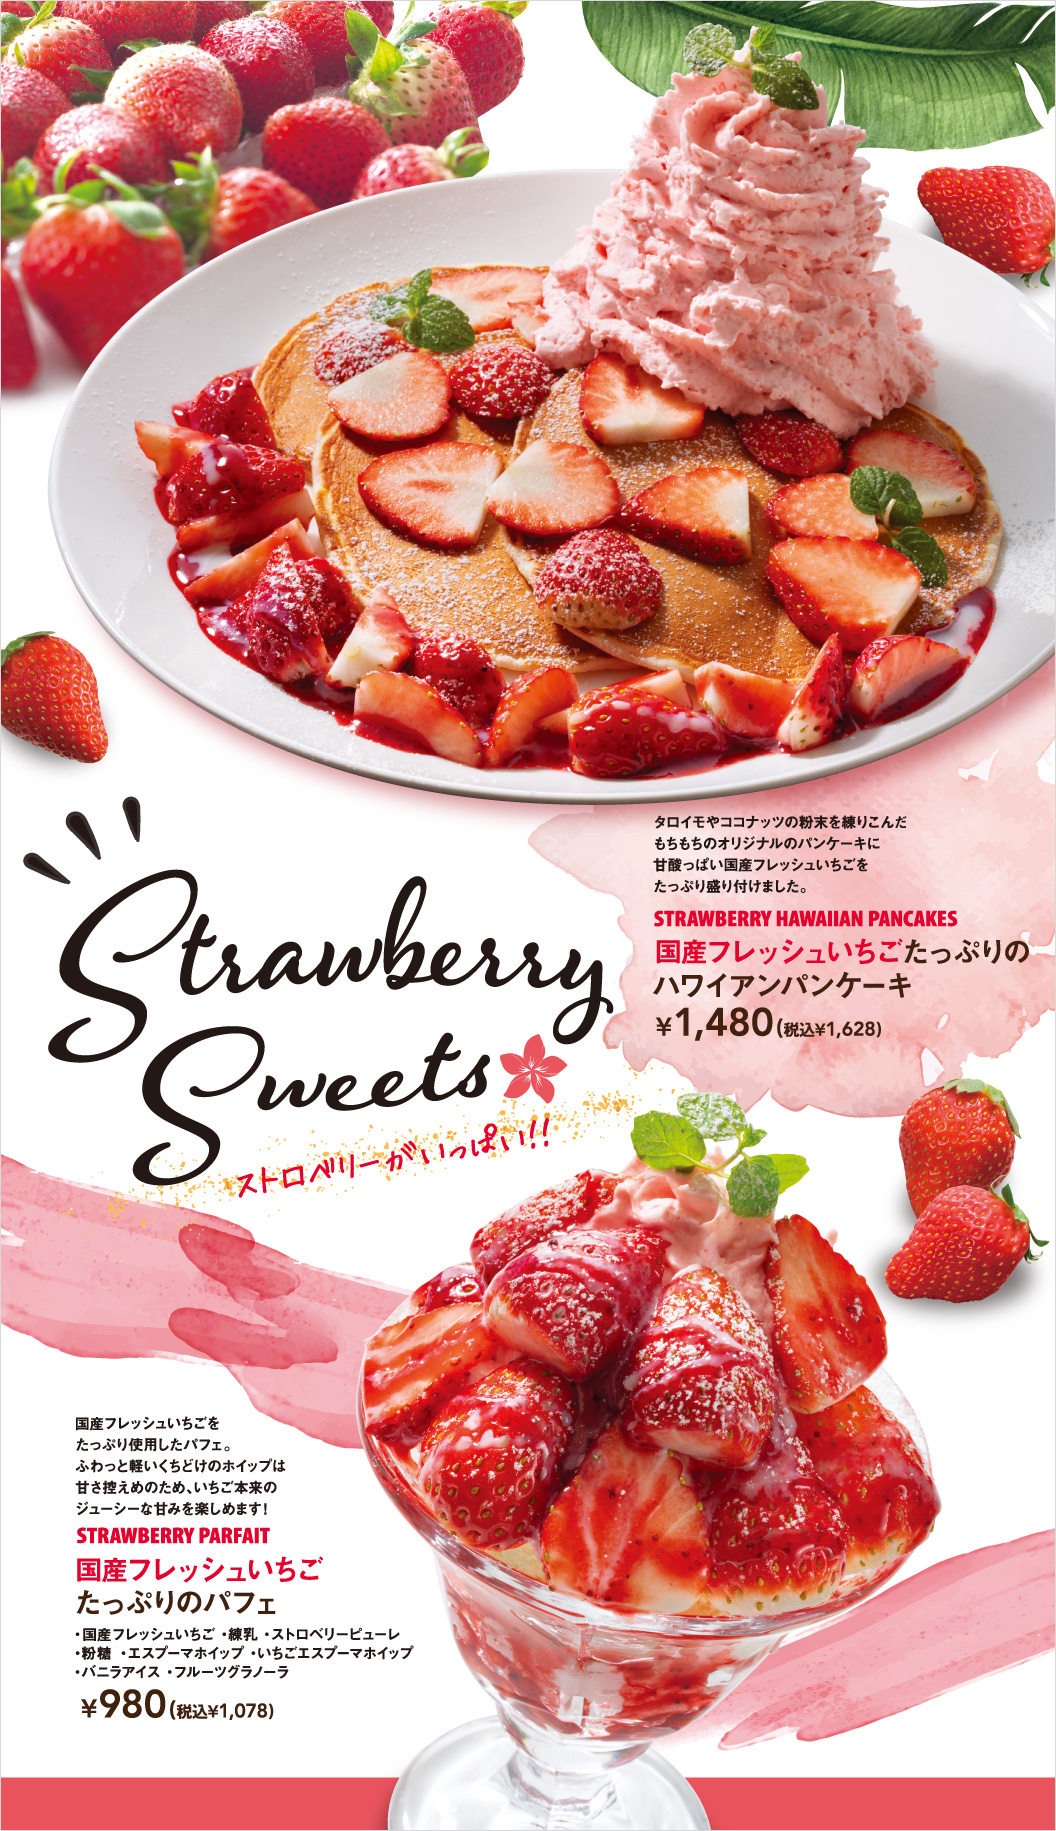 国产新鲜草莓夏威夷薄煎饼国产新鲜草莓圣代